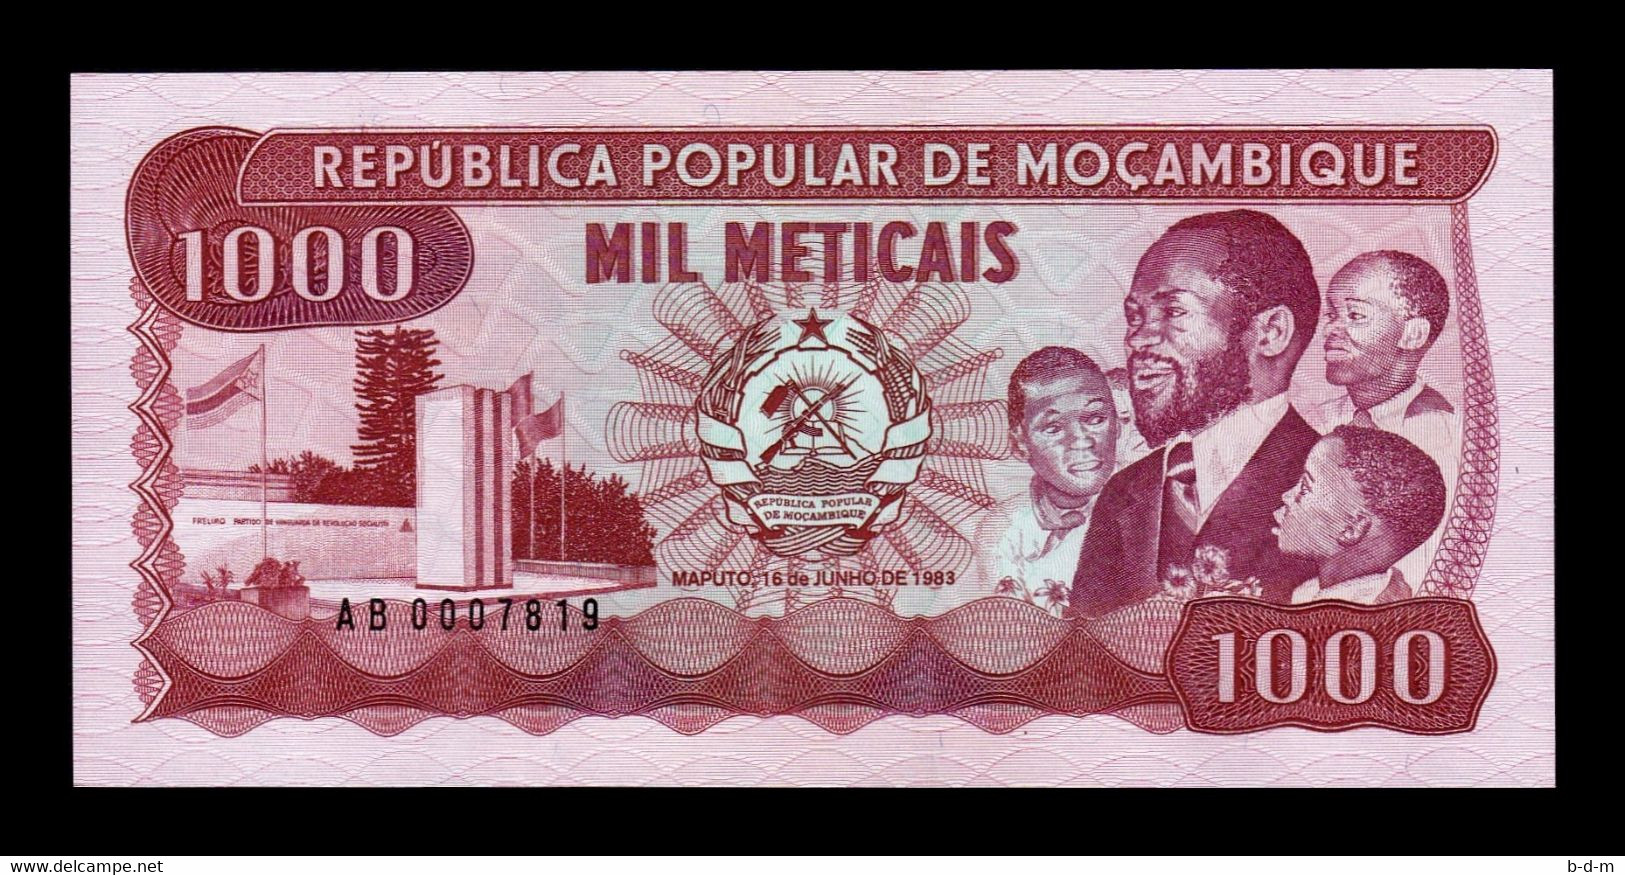 Mozambique 1000 Meticais 1983 Pick 132a SC UNC - Mozambique